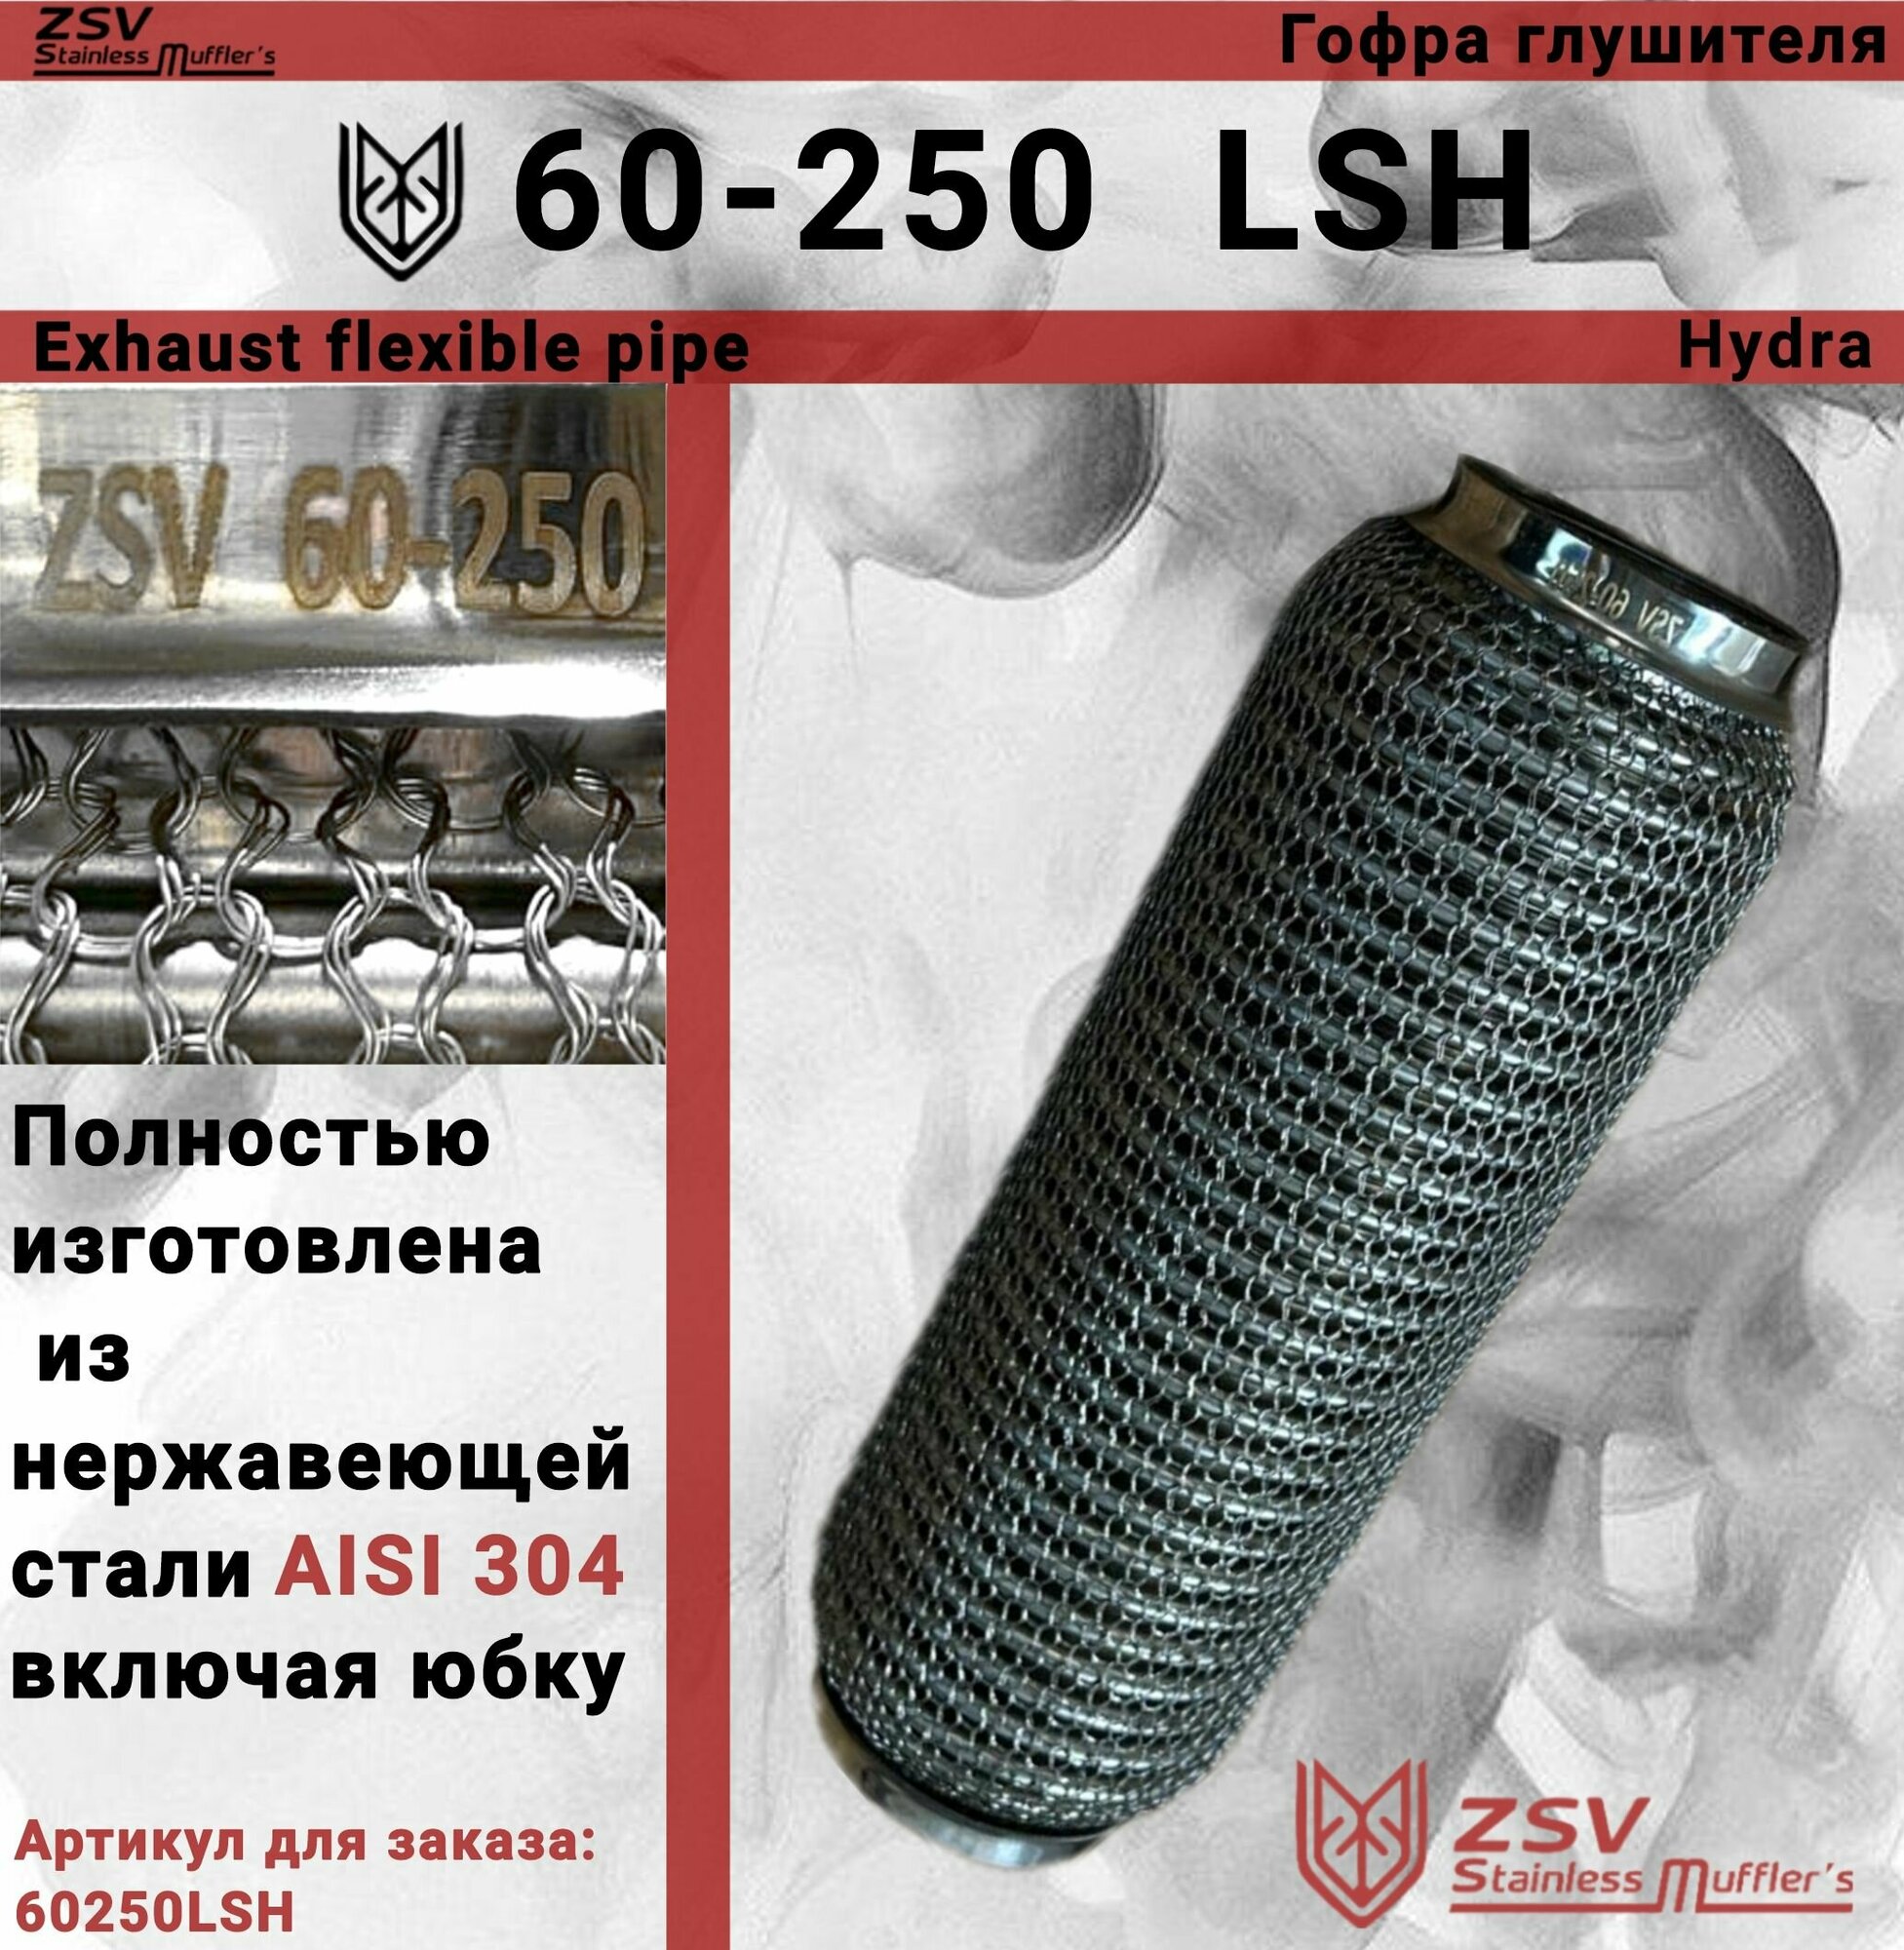 Гофра глушителя Hydra type 60-250 Улучшенная! полностью изготовлена из нержавеющей стали AISI 304